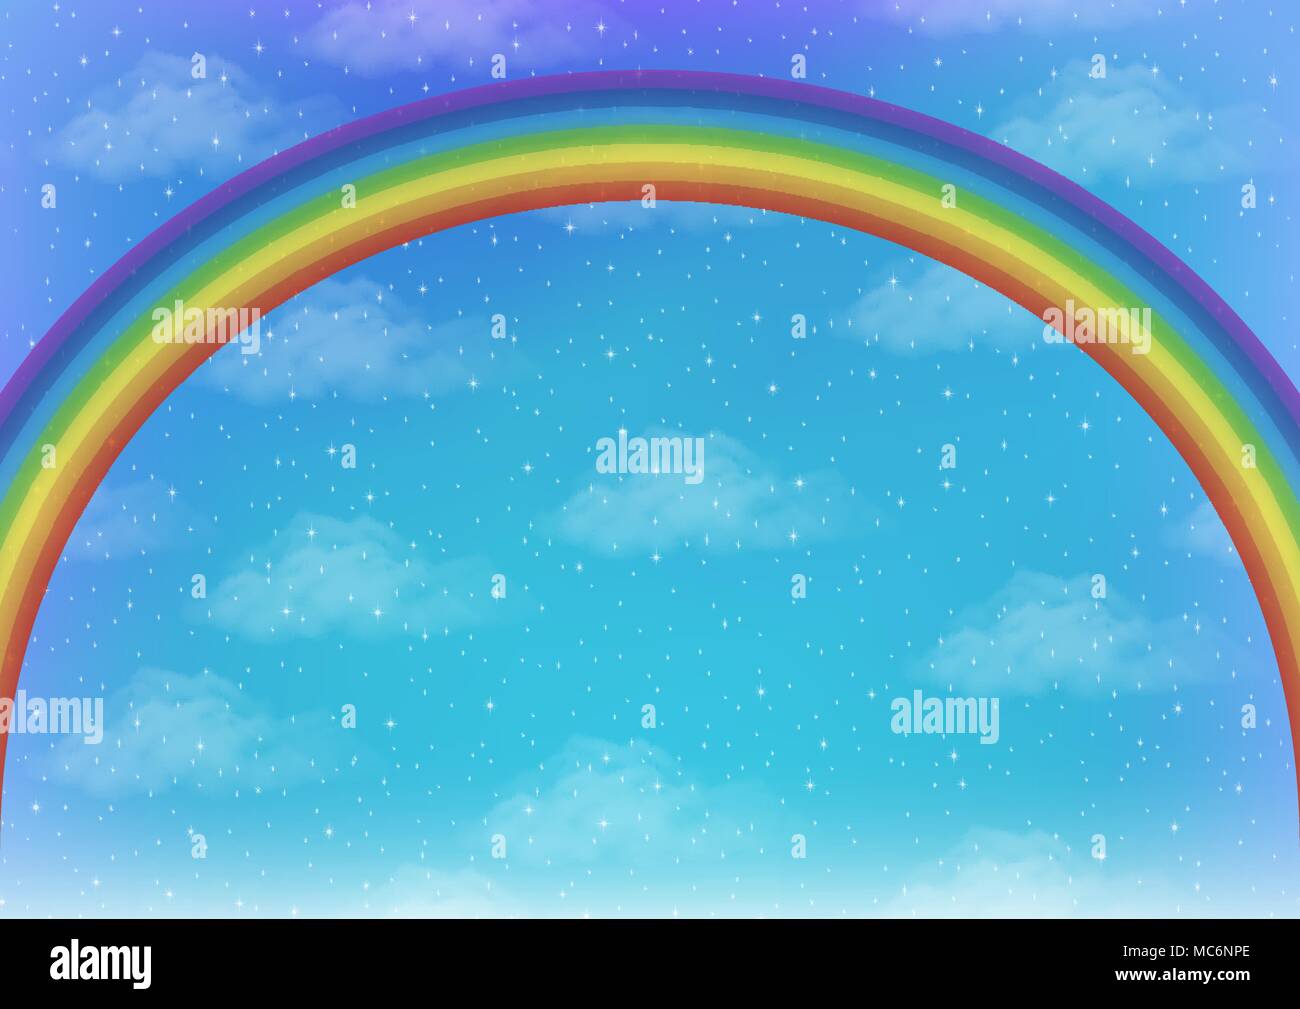 Paesaggio con sfondo luminoso arcobaleno colorato sul cielo blu con nuvole bianche e stelle. Eps10, contiene i lucidi. Vettore Illustrazione Vettoriale